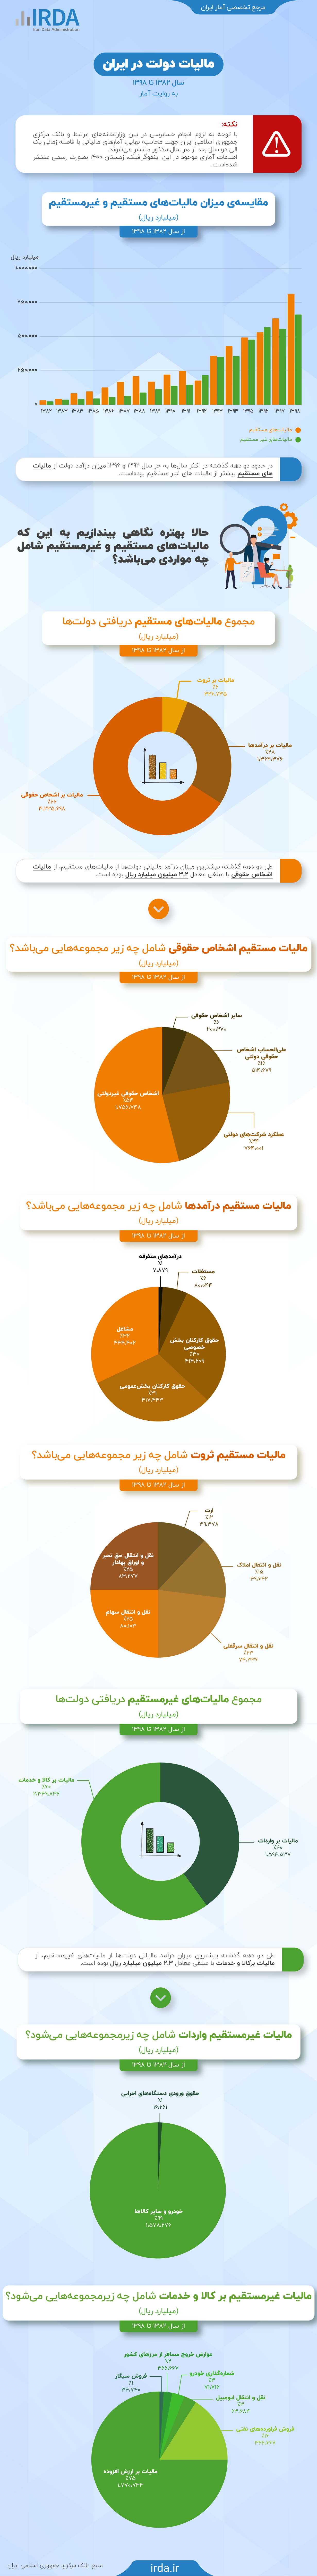 مالیات در ایران به روایت آمار 